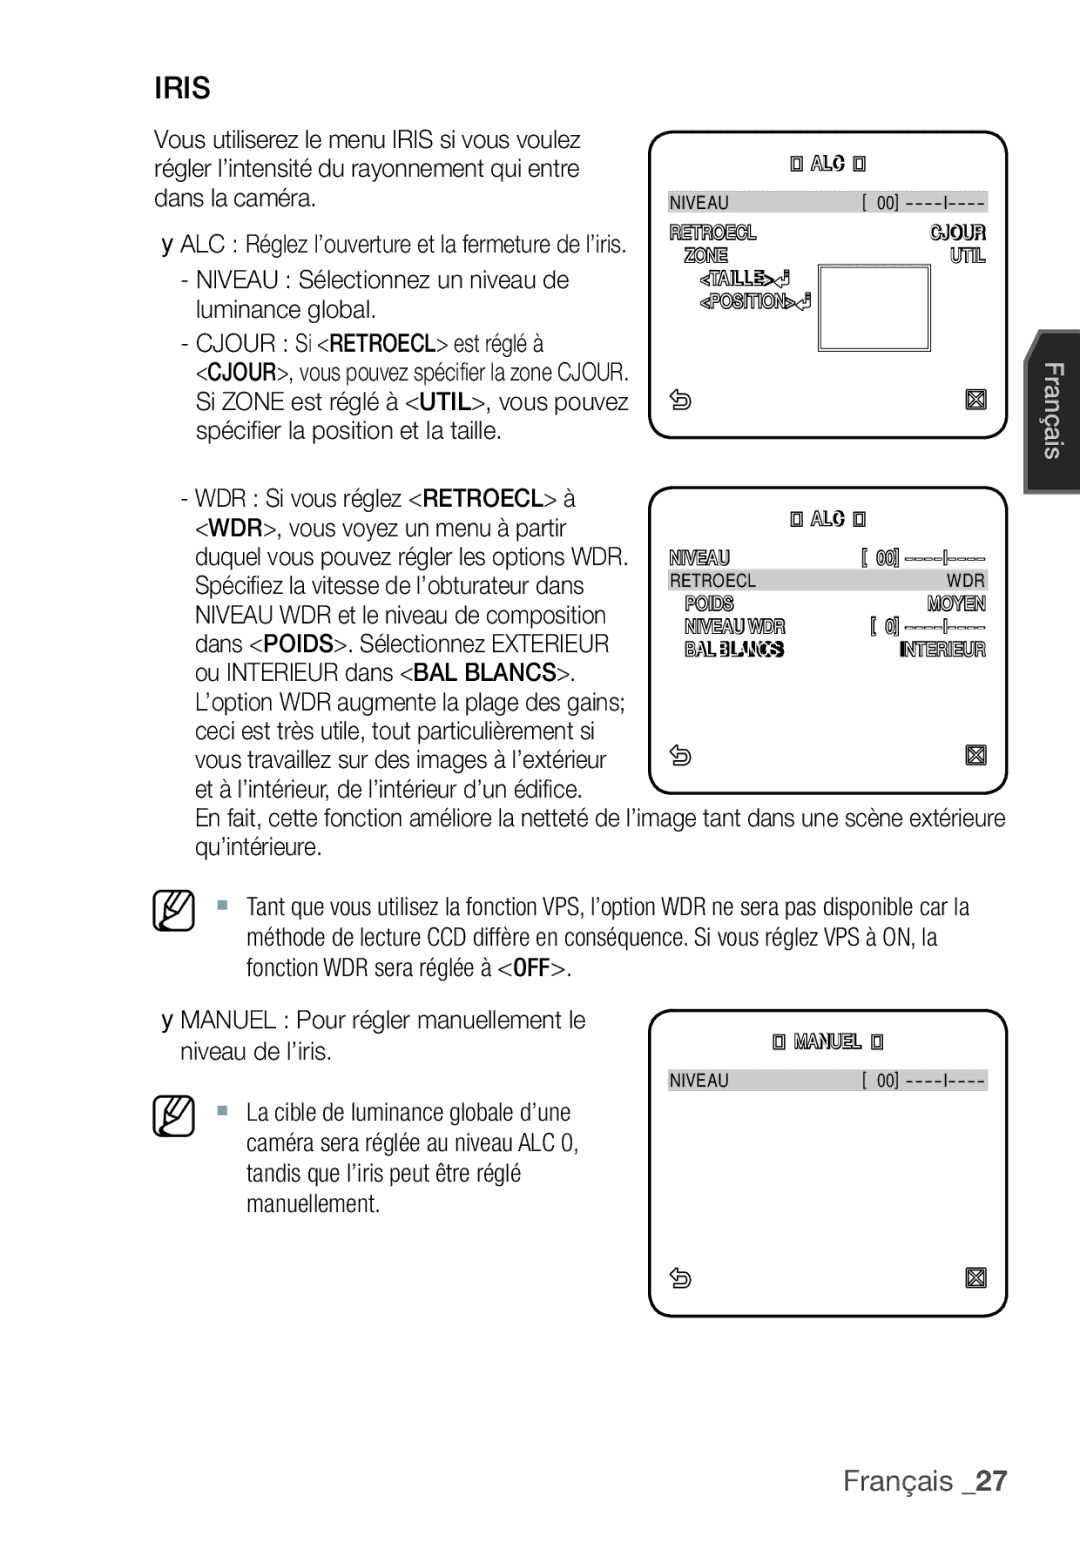 Samsung SCC-C7455P manual WDR Si vous réglez Retroecl à, WDR, vous voyez un menu à partir, Ou Interieur dans BAL Blancs 